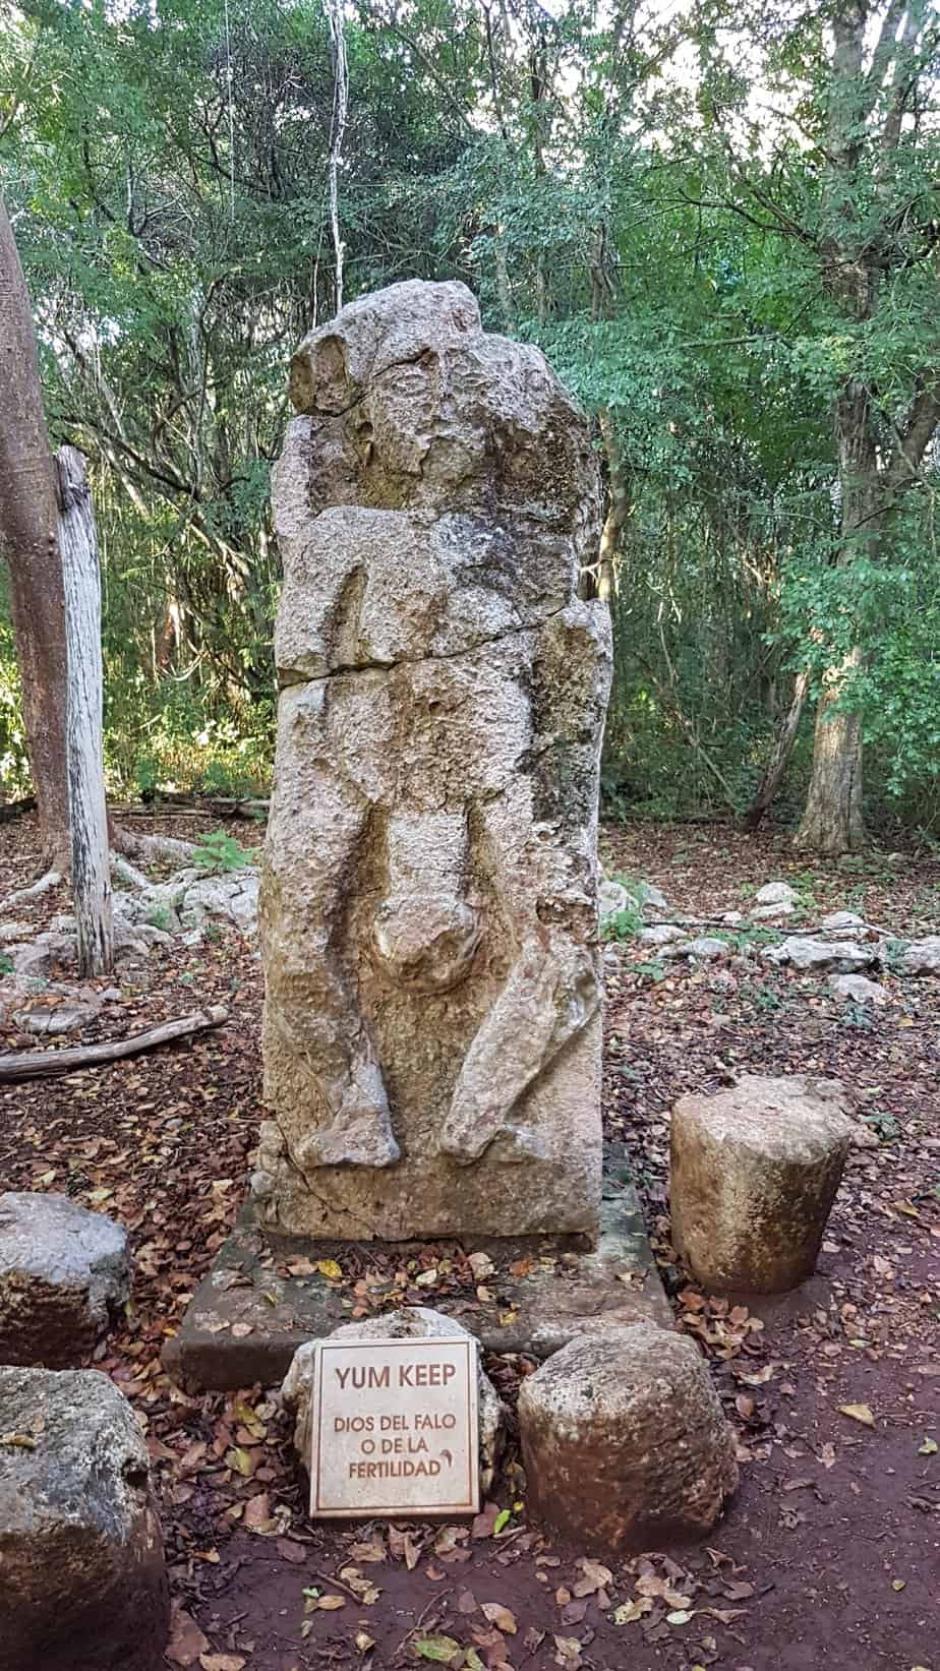 Otra representación del dios maya de la fertilidad, Yum Keep, en Yucatán, México